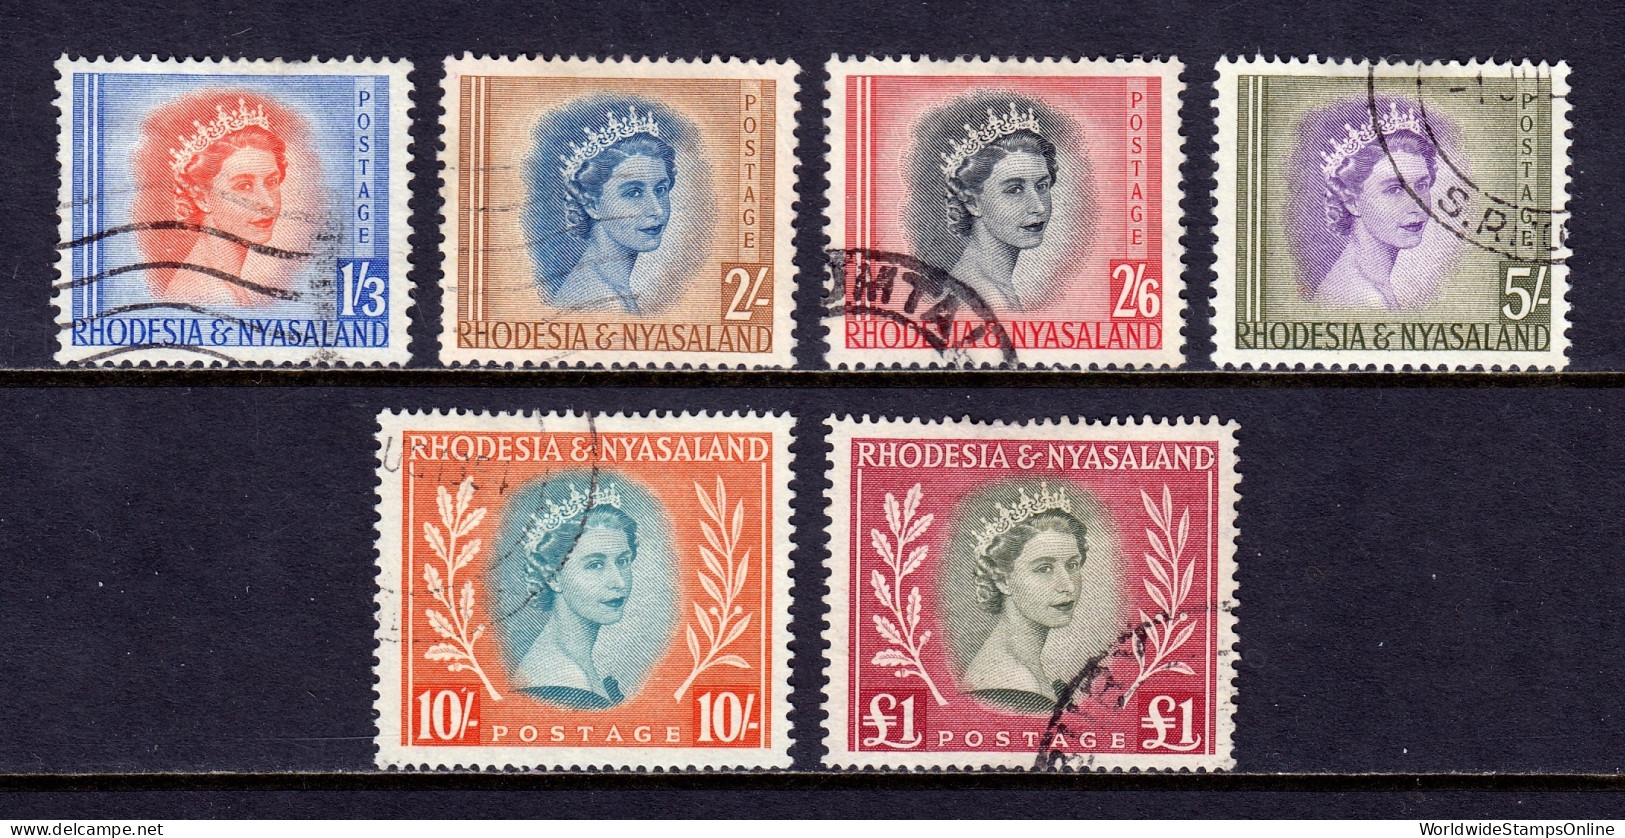 Rhodesia And Nyasaland - Scott #150//155 - Used - Hinge Bumps - SCV $54 - Rodesia & Nyasaland (1954-1963)